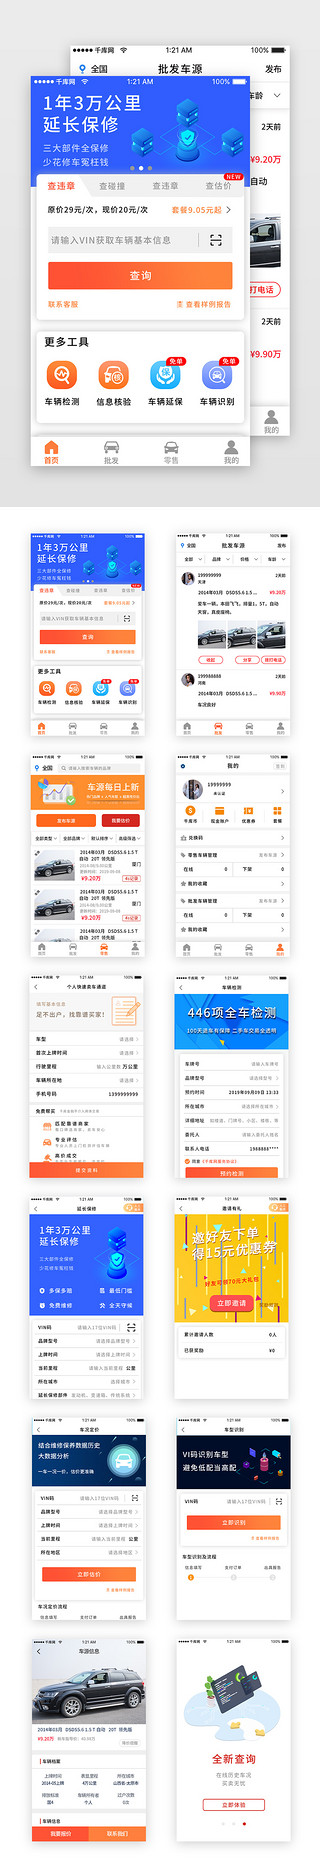 车辆顺利UI设计素材_蓝色科技二手车销售车辆app套图